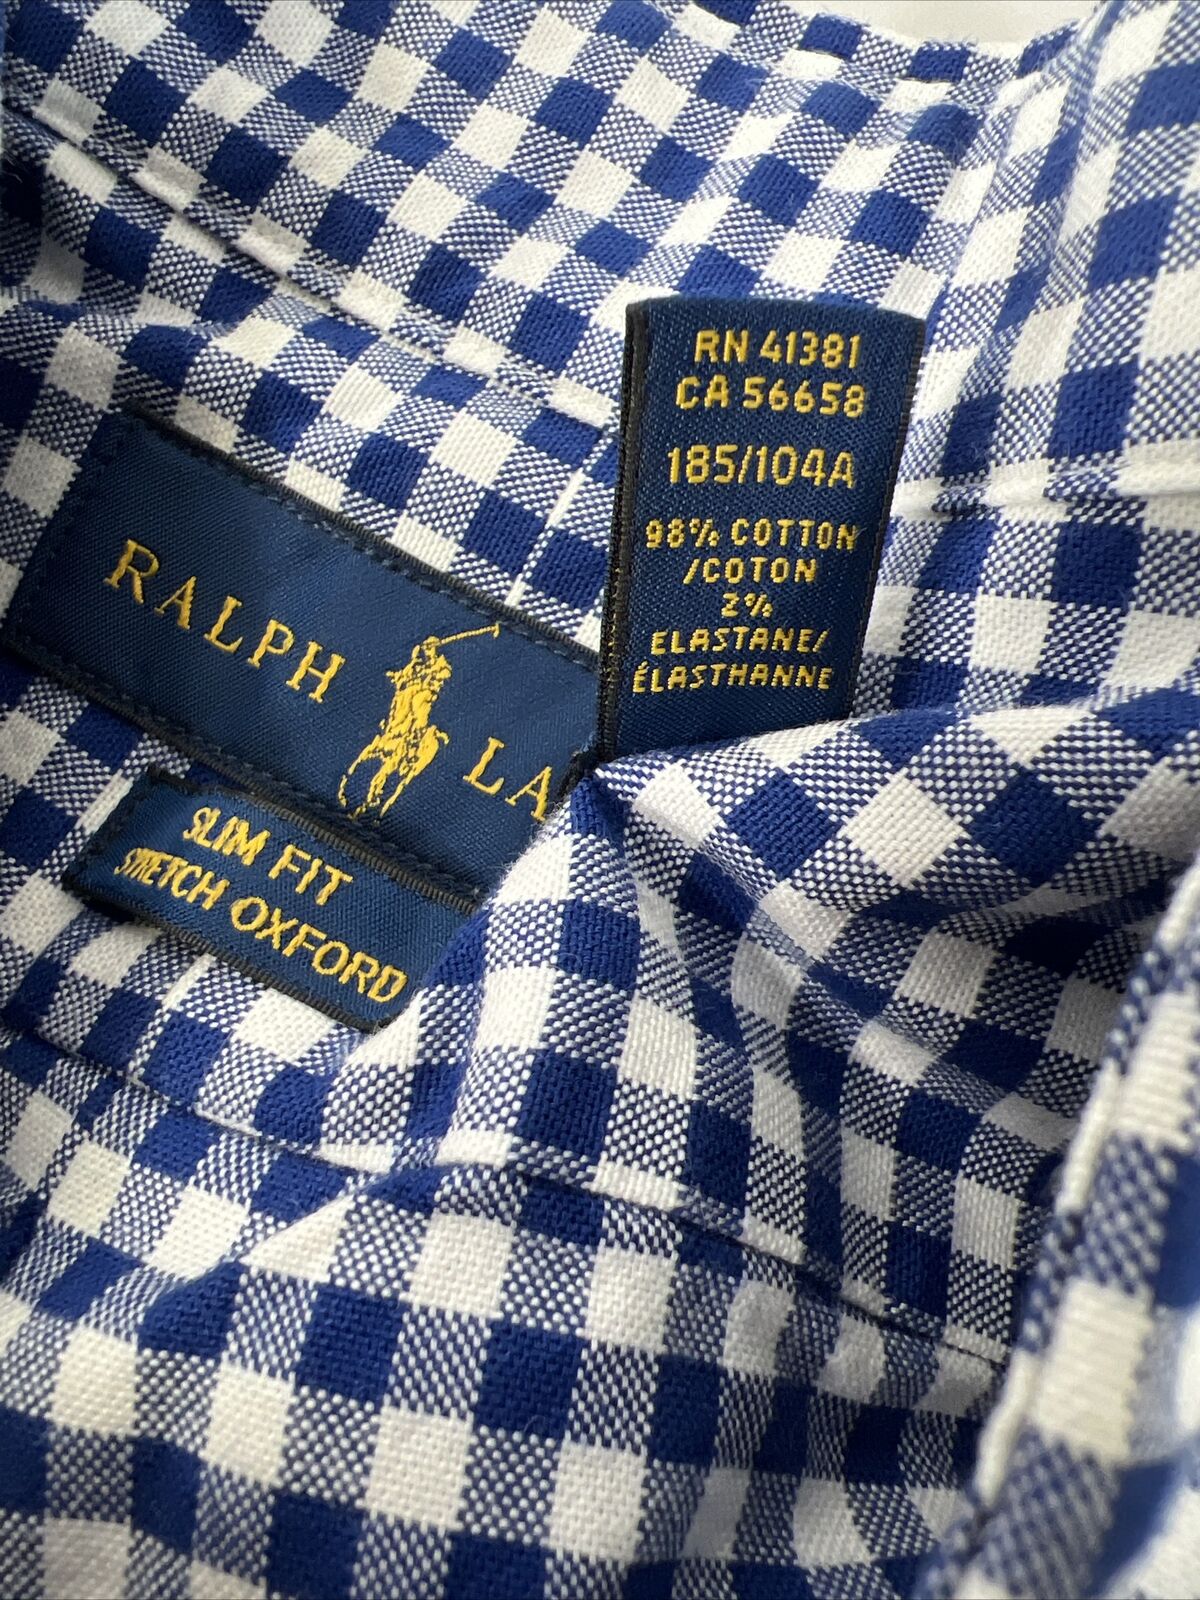 Ralph Lauren Mens Blue Checkered Long Sleeve Slim Fit Button Up Shirt -XL